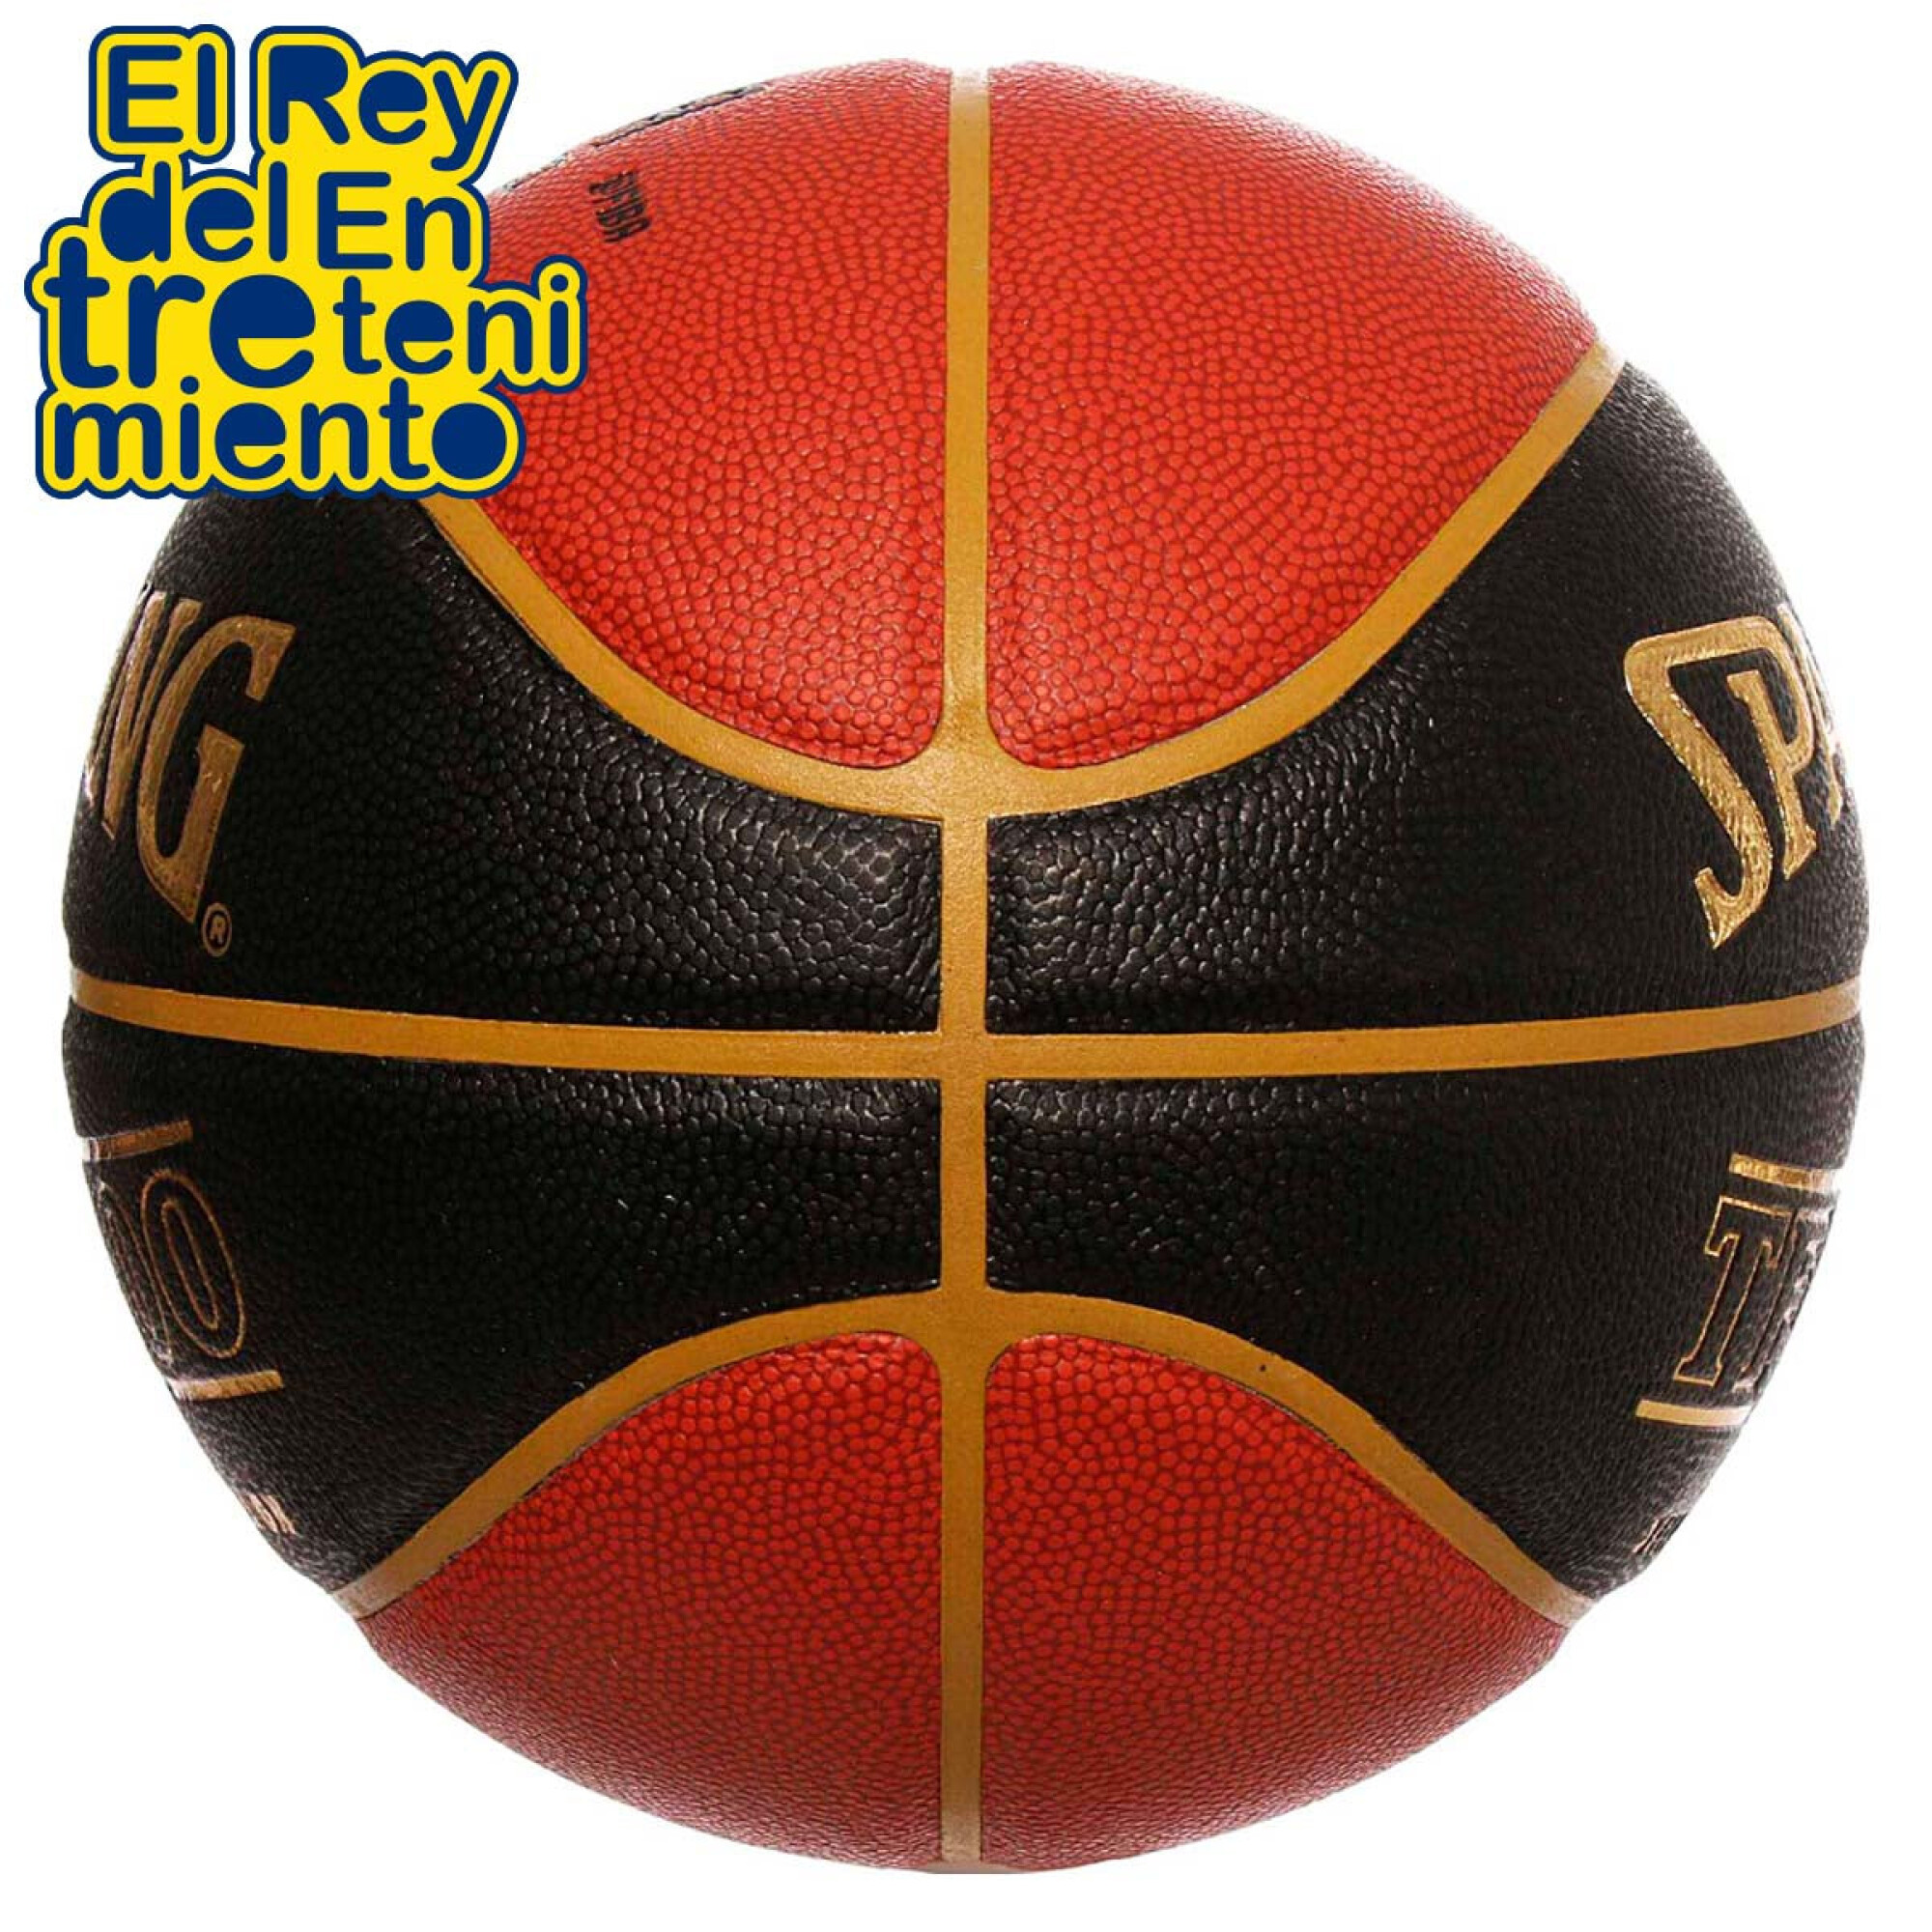 https://f.fcdn.app/imgs/990e3a/elreydelentretenimiento.com/erdeuy/54c5/original/catalogo/4973589233803_4973589233803_2/2000-2000/pelota-spalding-oficial-basketball-tf1000-regalos-pelota-spalding-oficial-basketball-tf1000-regalos.jpg